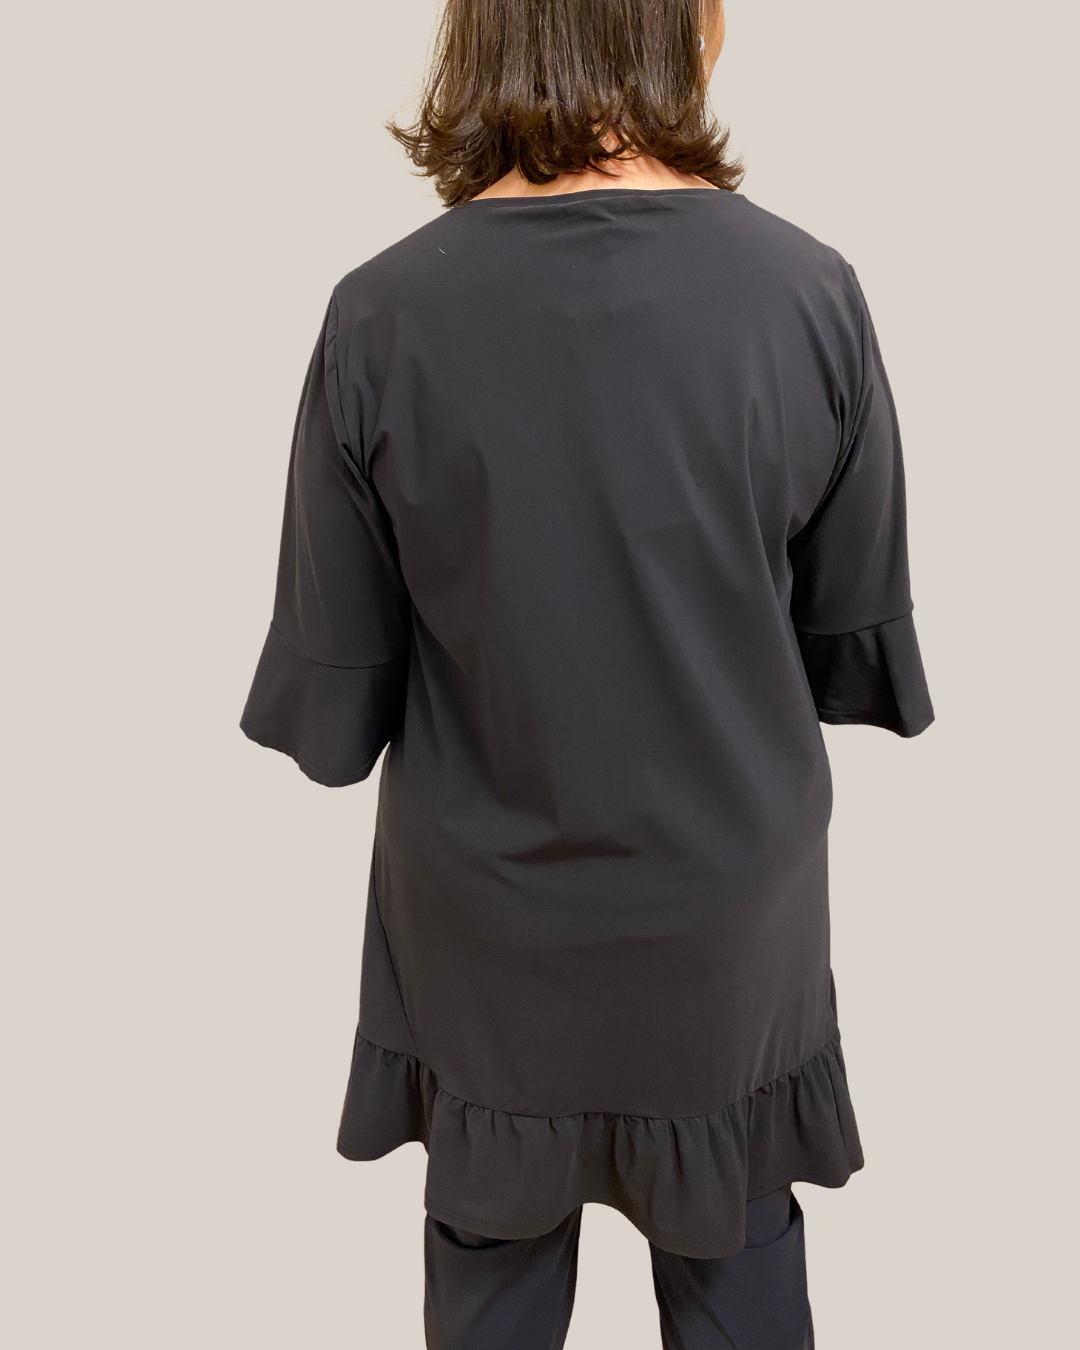 Schwarzes Tunika-Shirt mit Rüschen